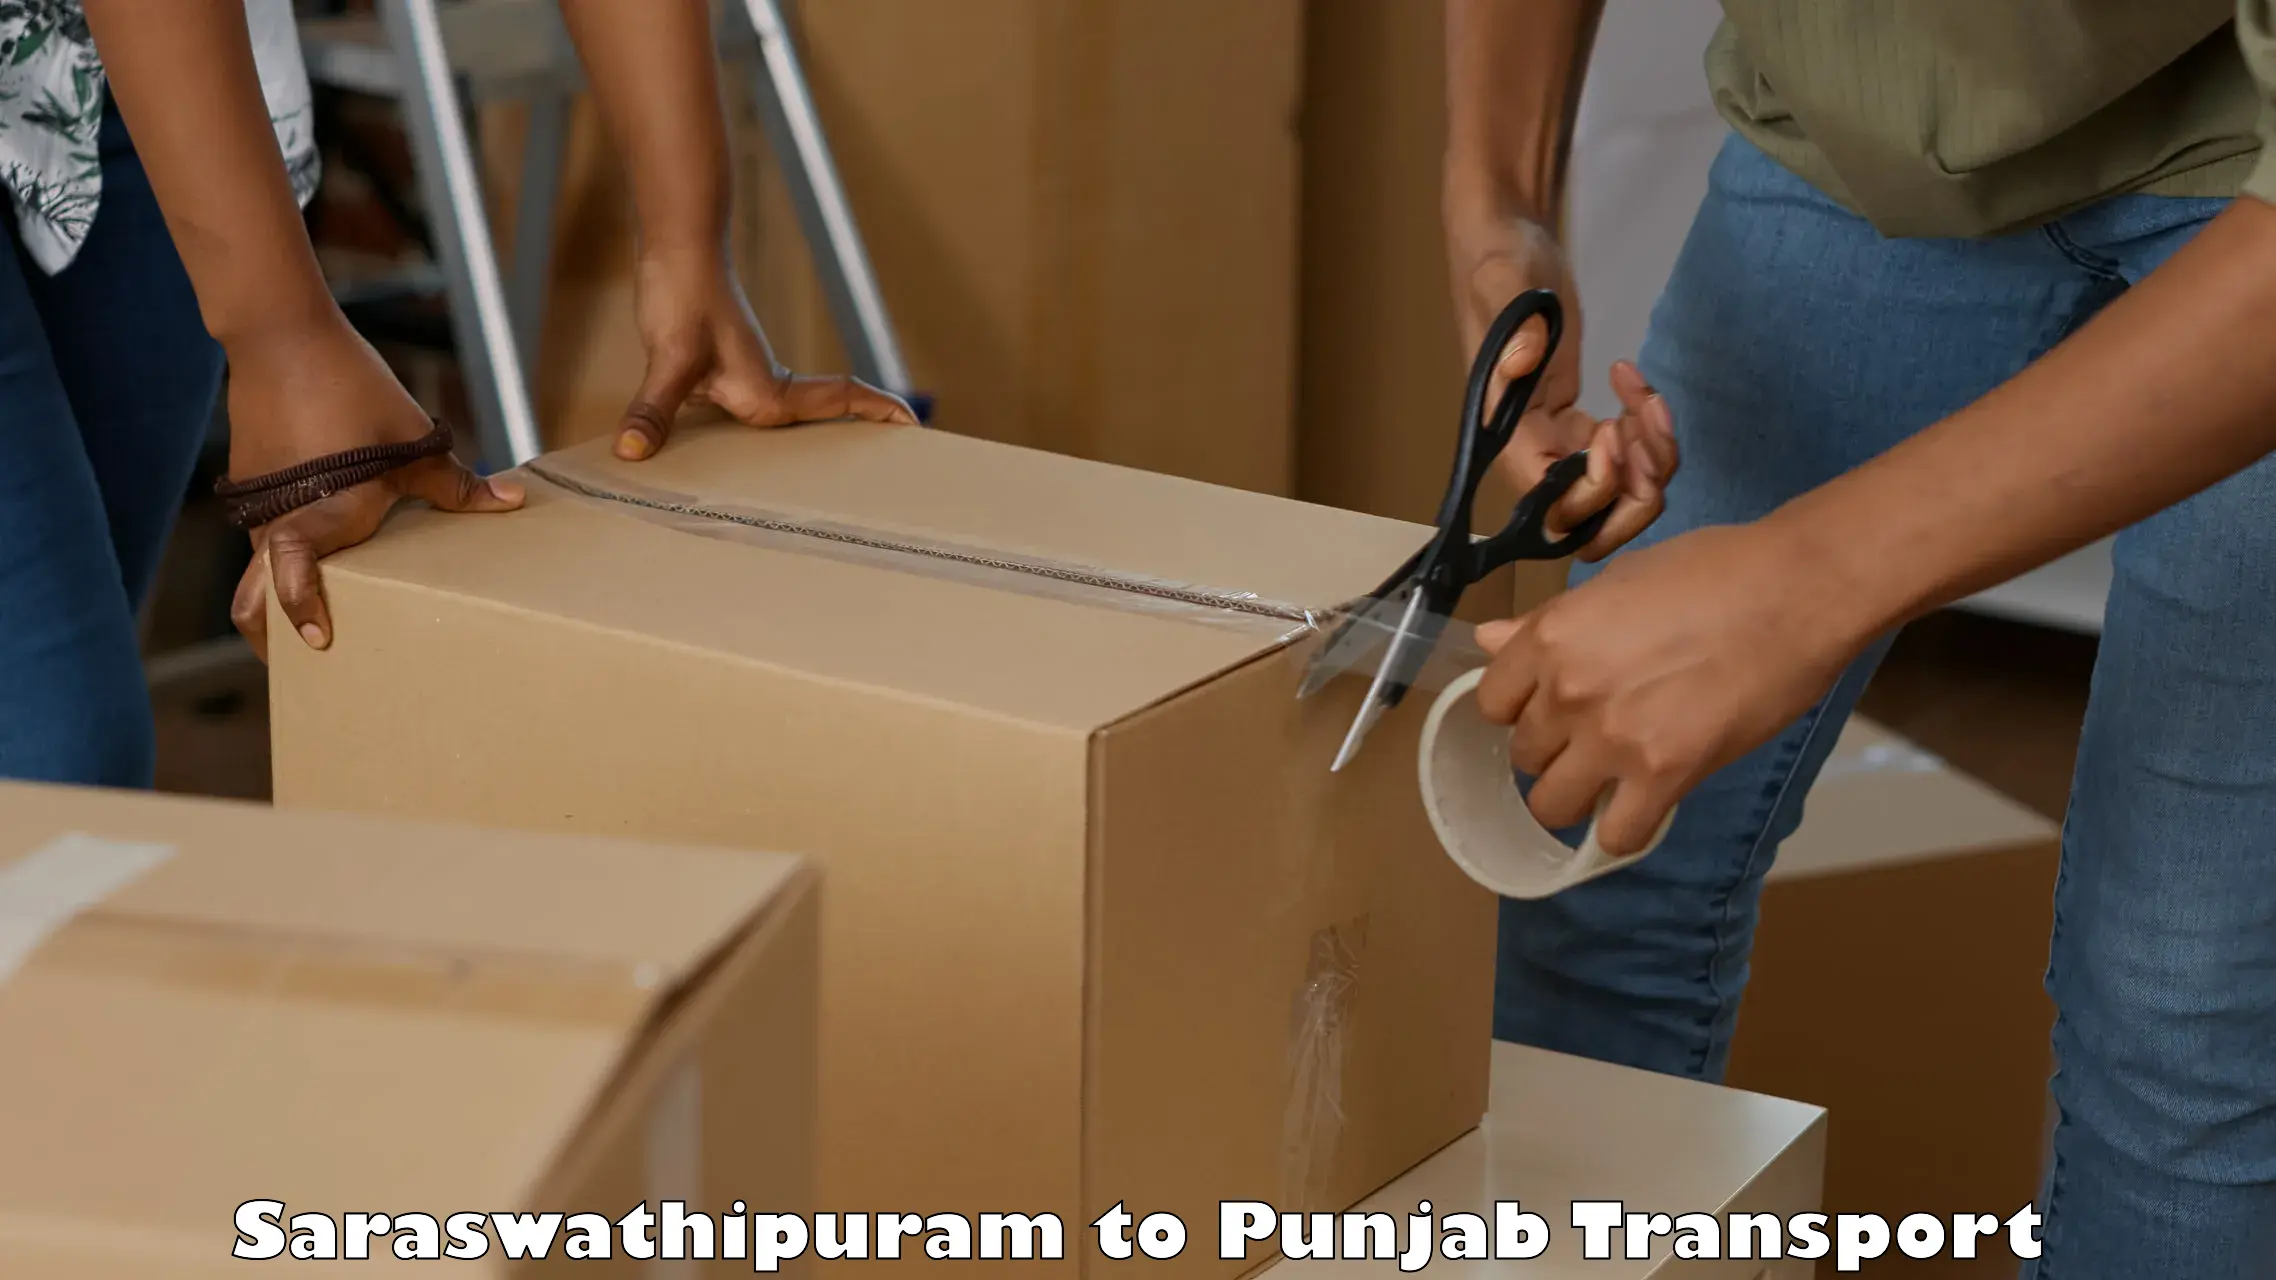 Container transport service Saraswathipuram to Rampura Phul